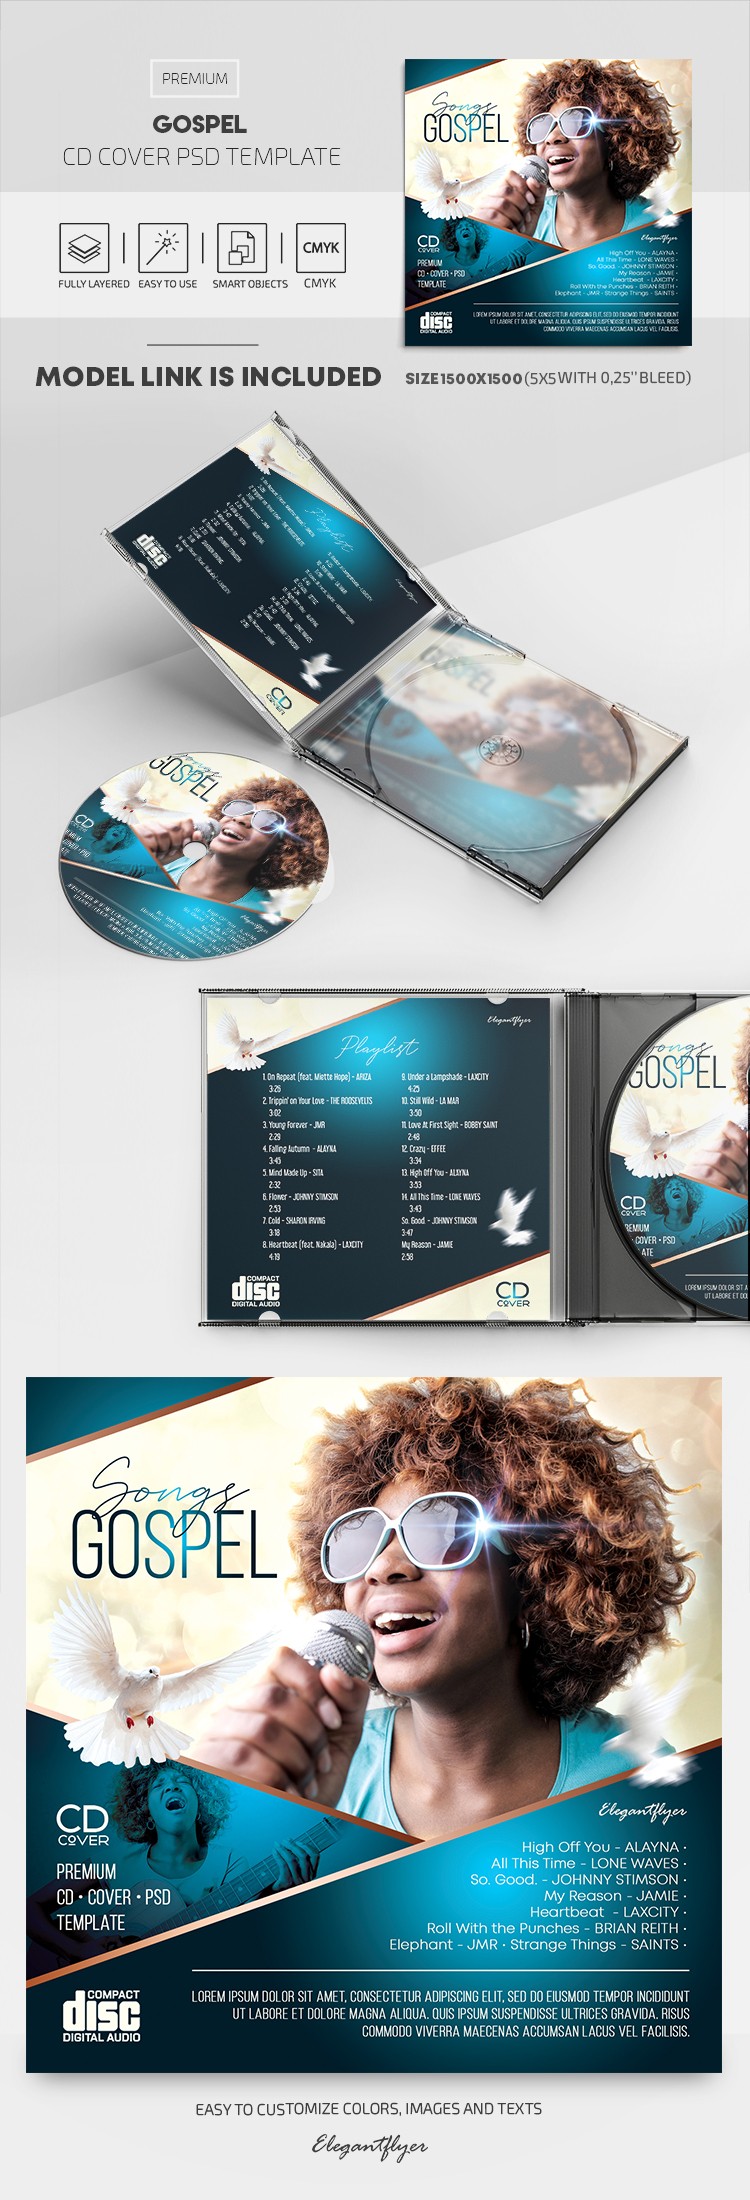 Couverture de CD de Gospel by ElegantFlyer